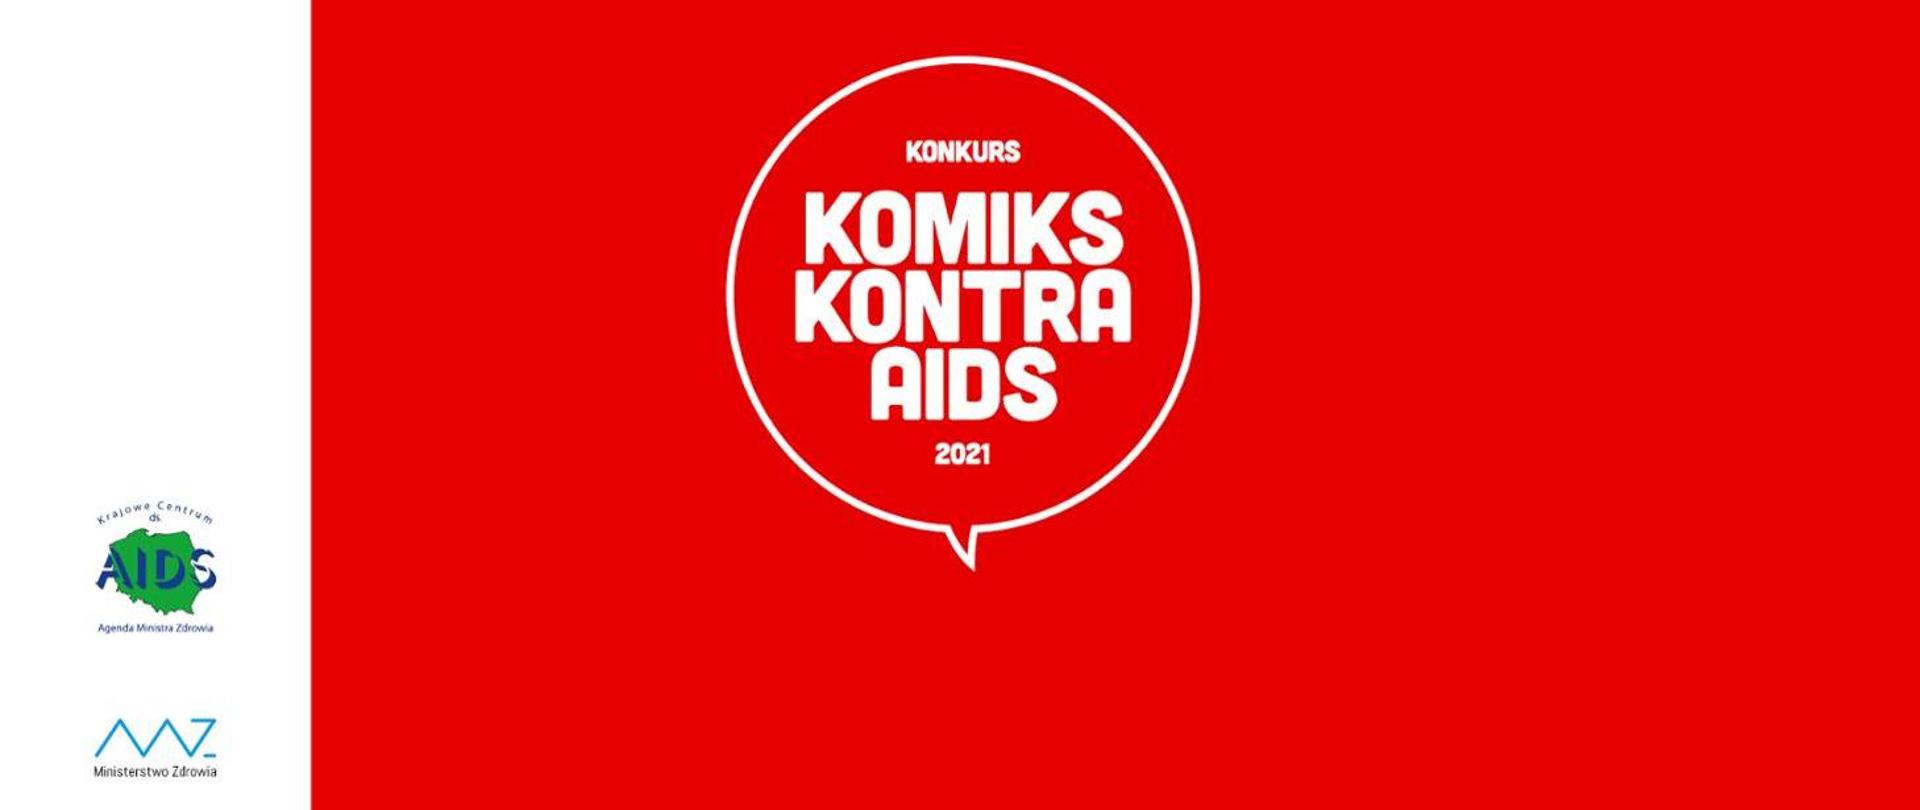 Na czerwonym tle napis Konkurs Komiks kontra AIDS 2021